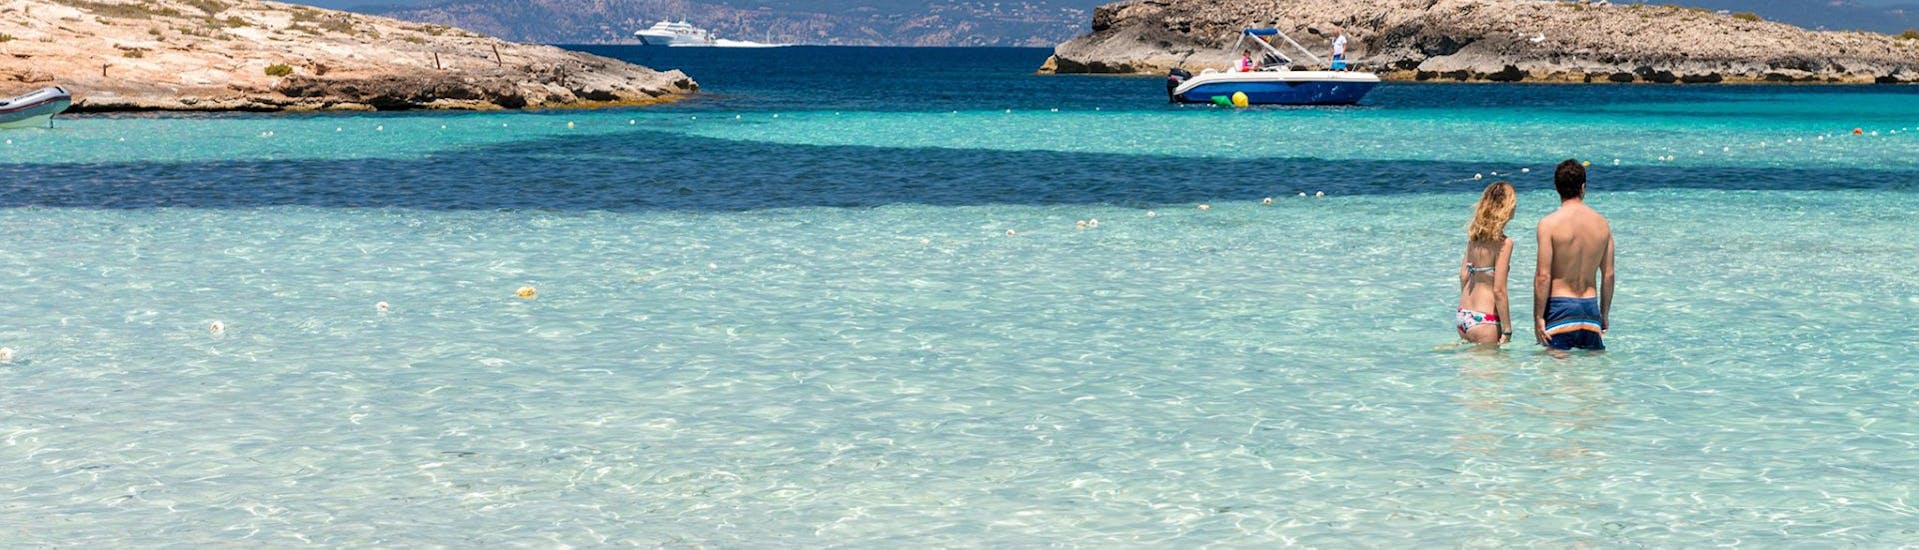 Catamarantocht van Ibiza Stad naar Cala Saona met zwemmen & toeristische attracties.